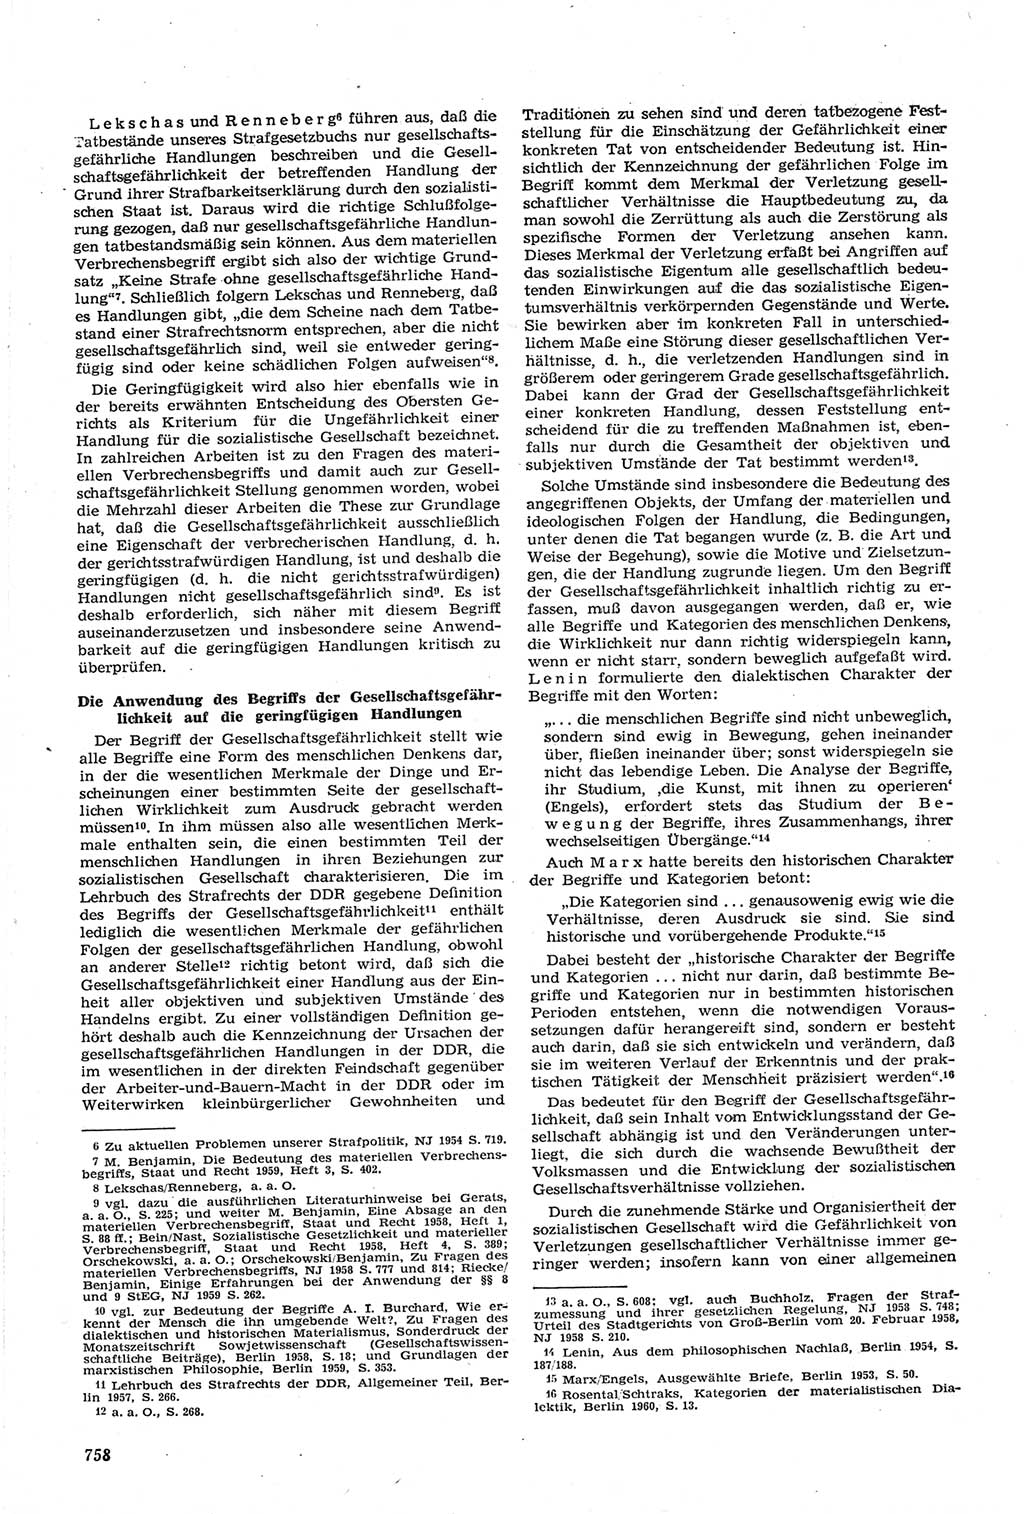 Neue Justiz (NJ), Zeitschrift für Recht und Rechtswissenschaft [Deutsche Demokratische Republik (DDR)], 14. Jahrgang 1960, Seite 758 (NJ DDR 1960, S. 758)